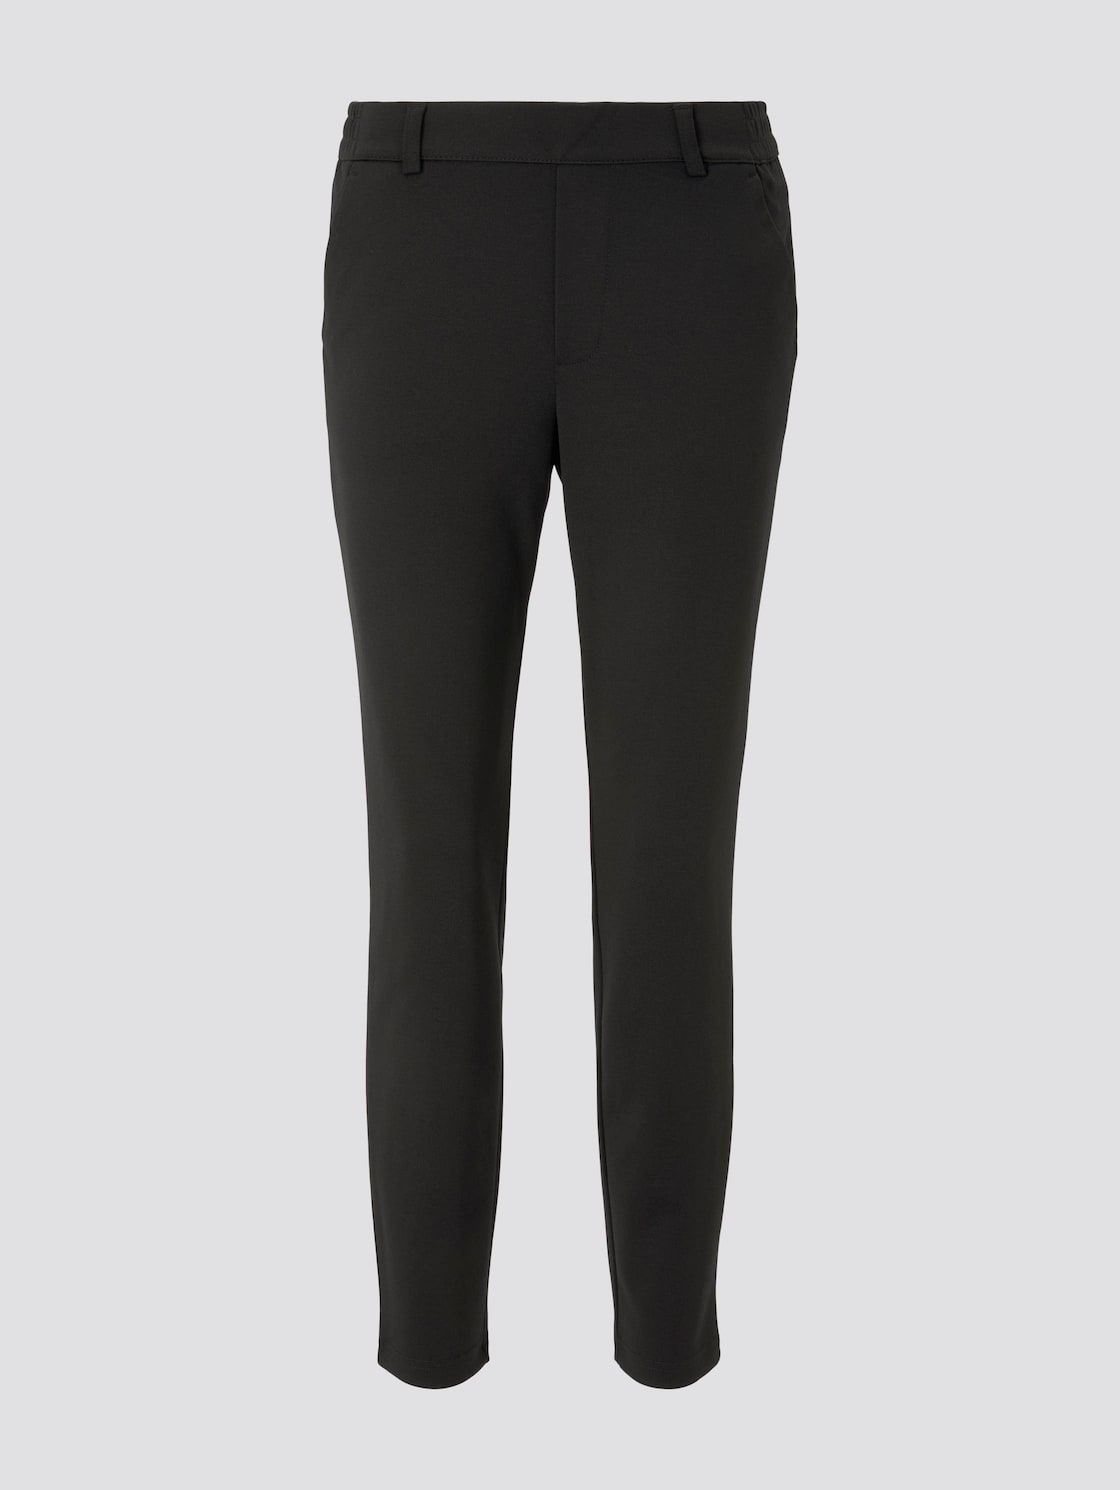 TOM TAILOR DENIM Damen Relaxed Fit Hose mit elastischem Bund, schwarz, Gr. XL von Tom Tailor Denim